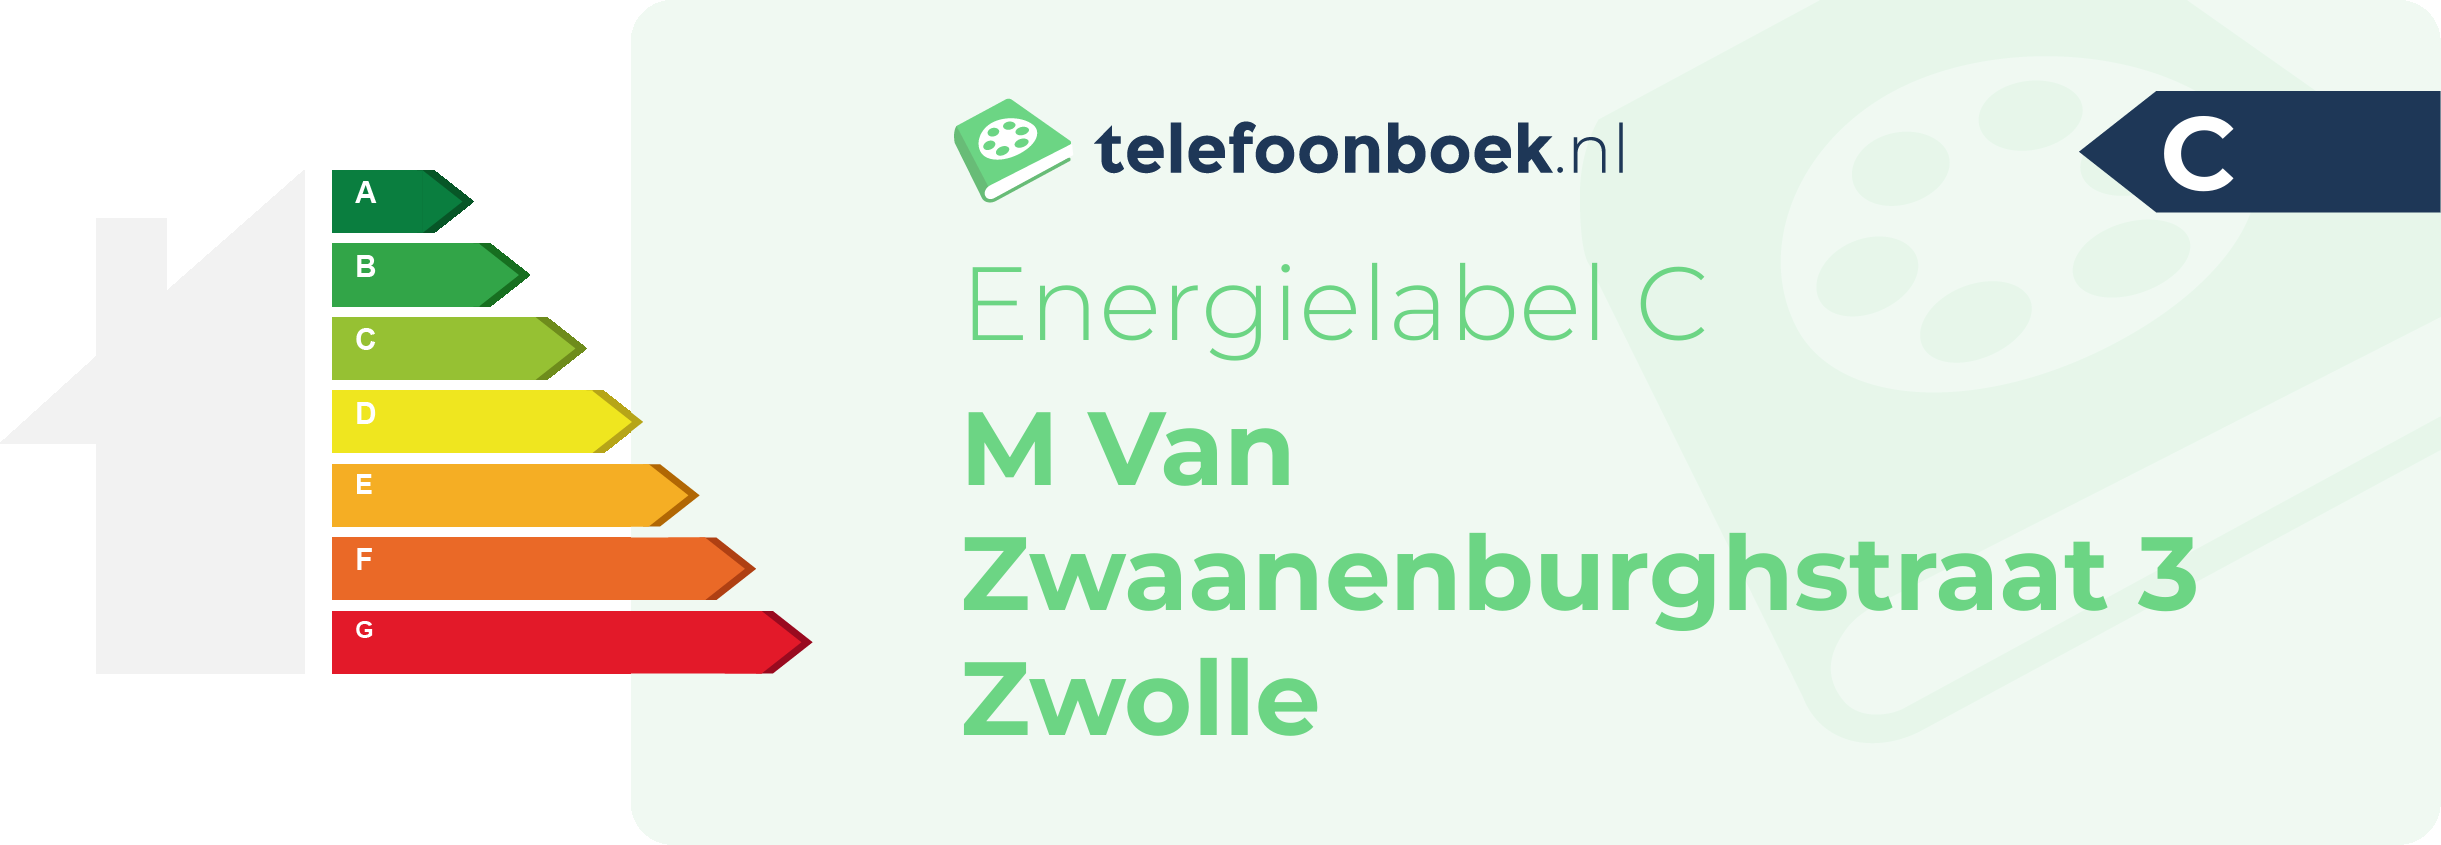 Energielabel M Van Zwaanenburghstraat 3 Zwolle